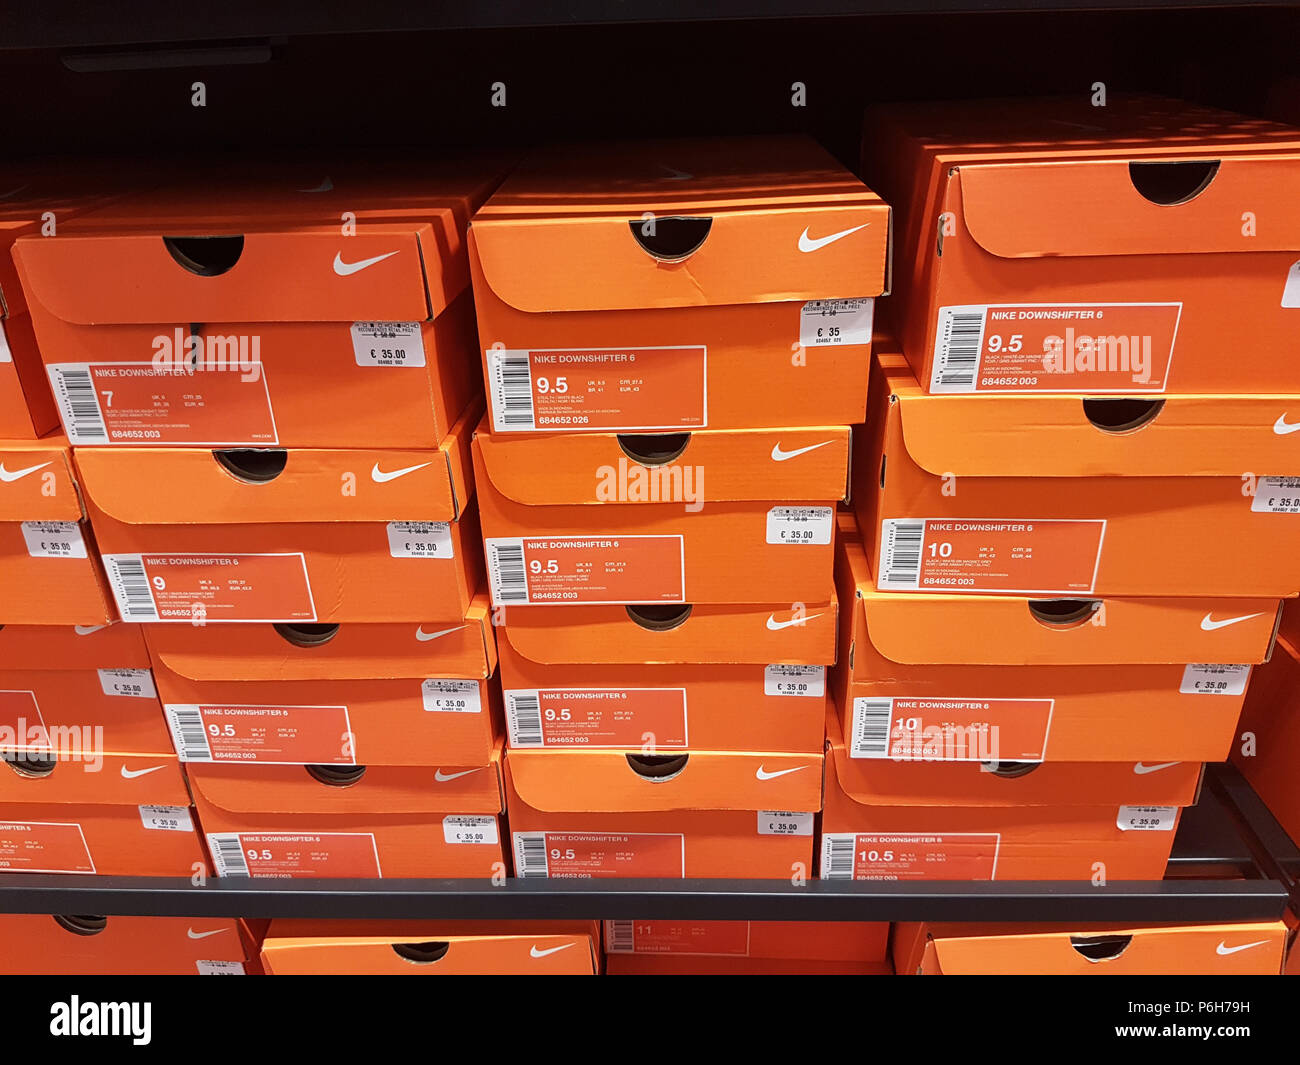 Nike outlet immagini e fotografie stock ad alta risoluzione - Alamy